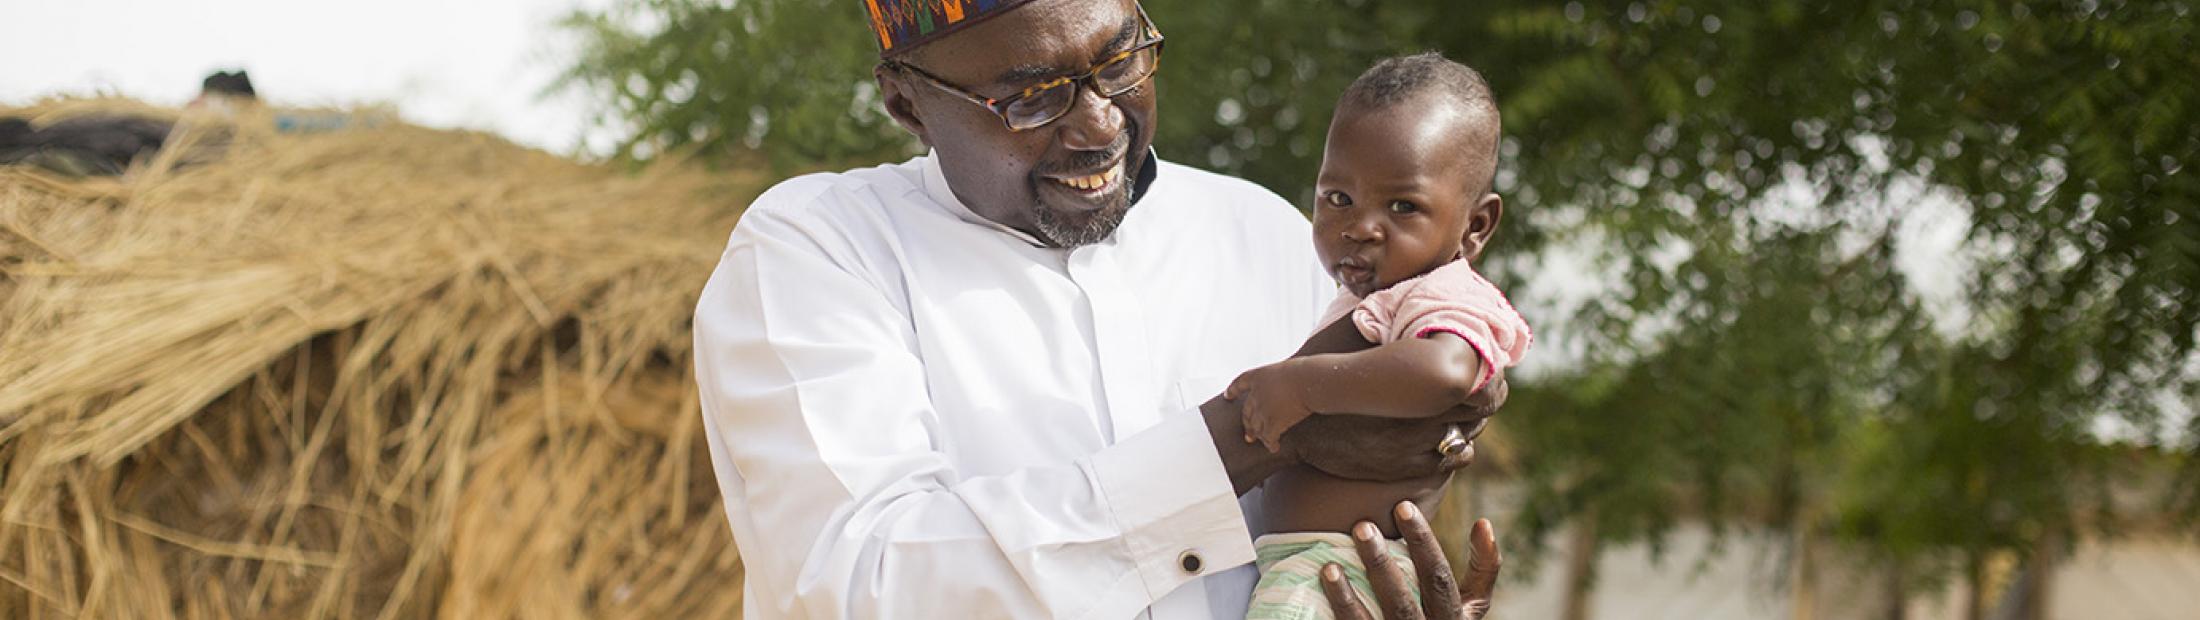 Zannah Mustapha, Premio Nansen por dar educación a los niños de Boko Haram